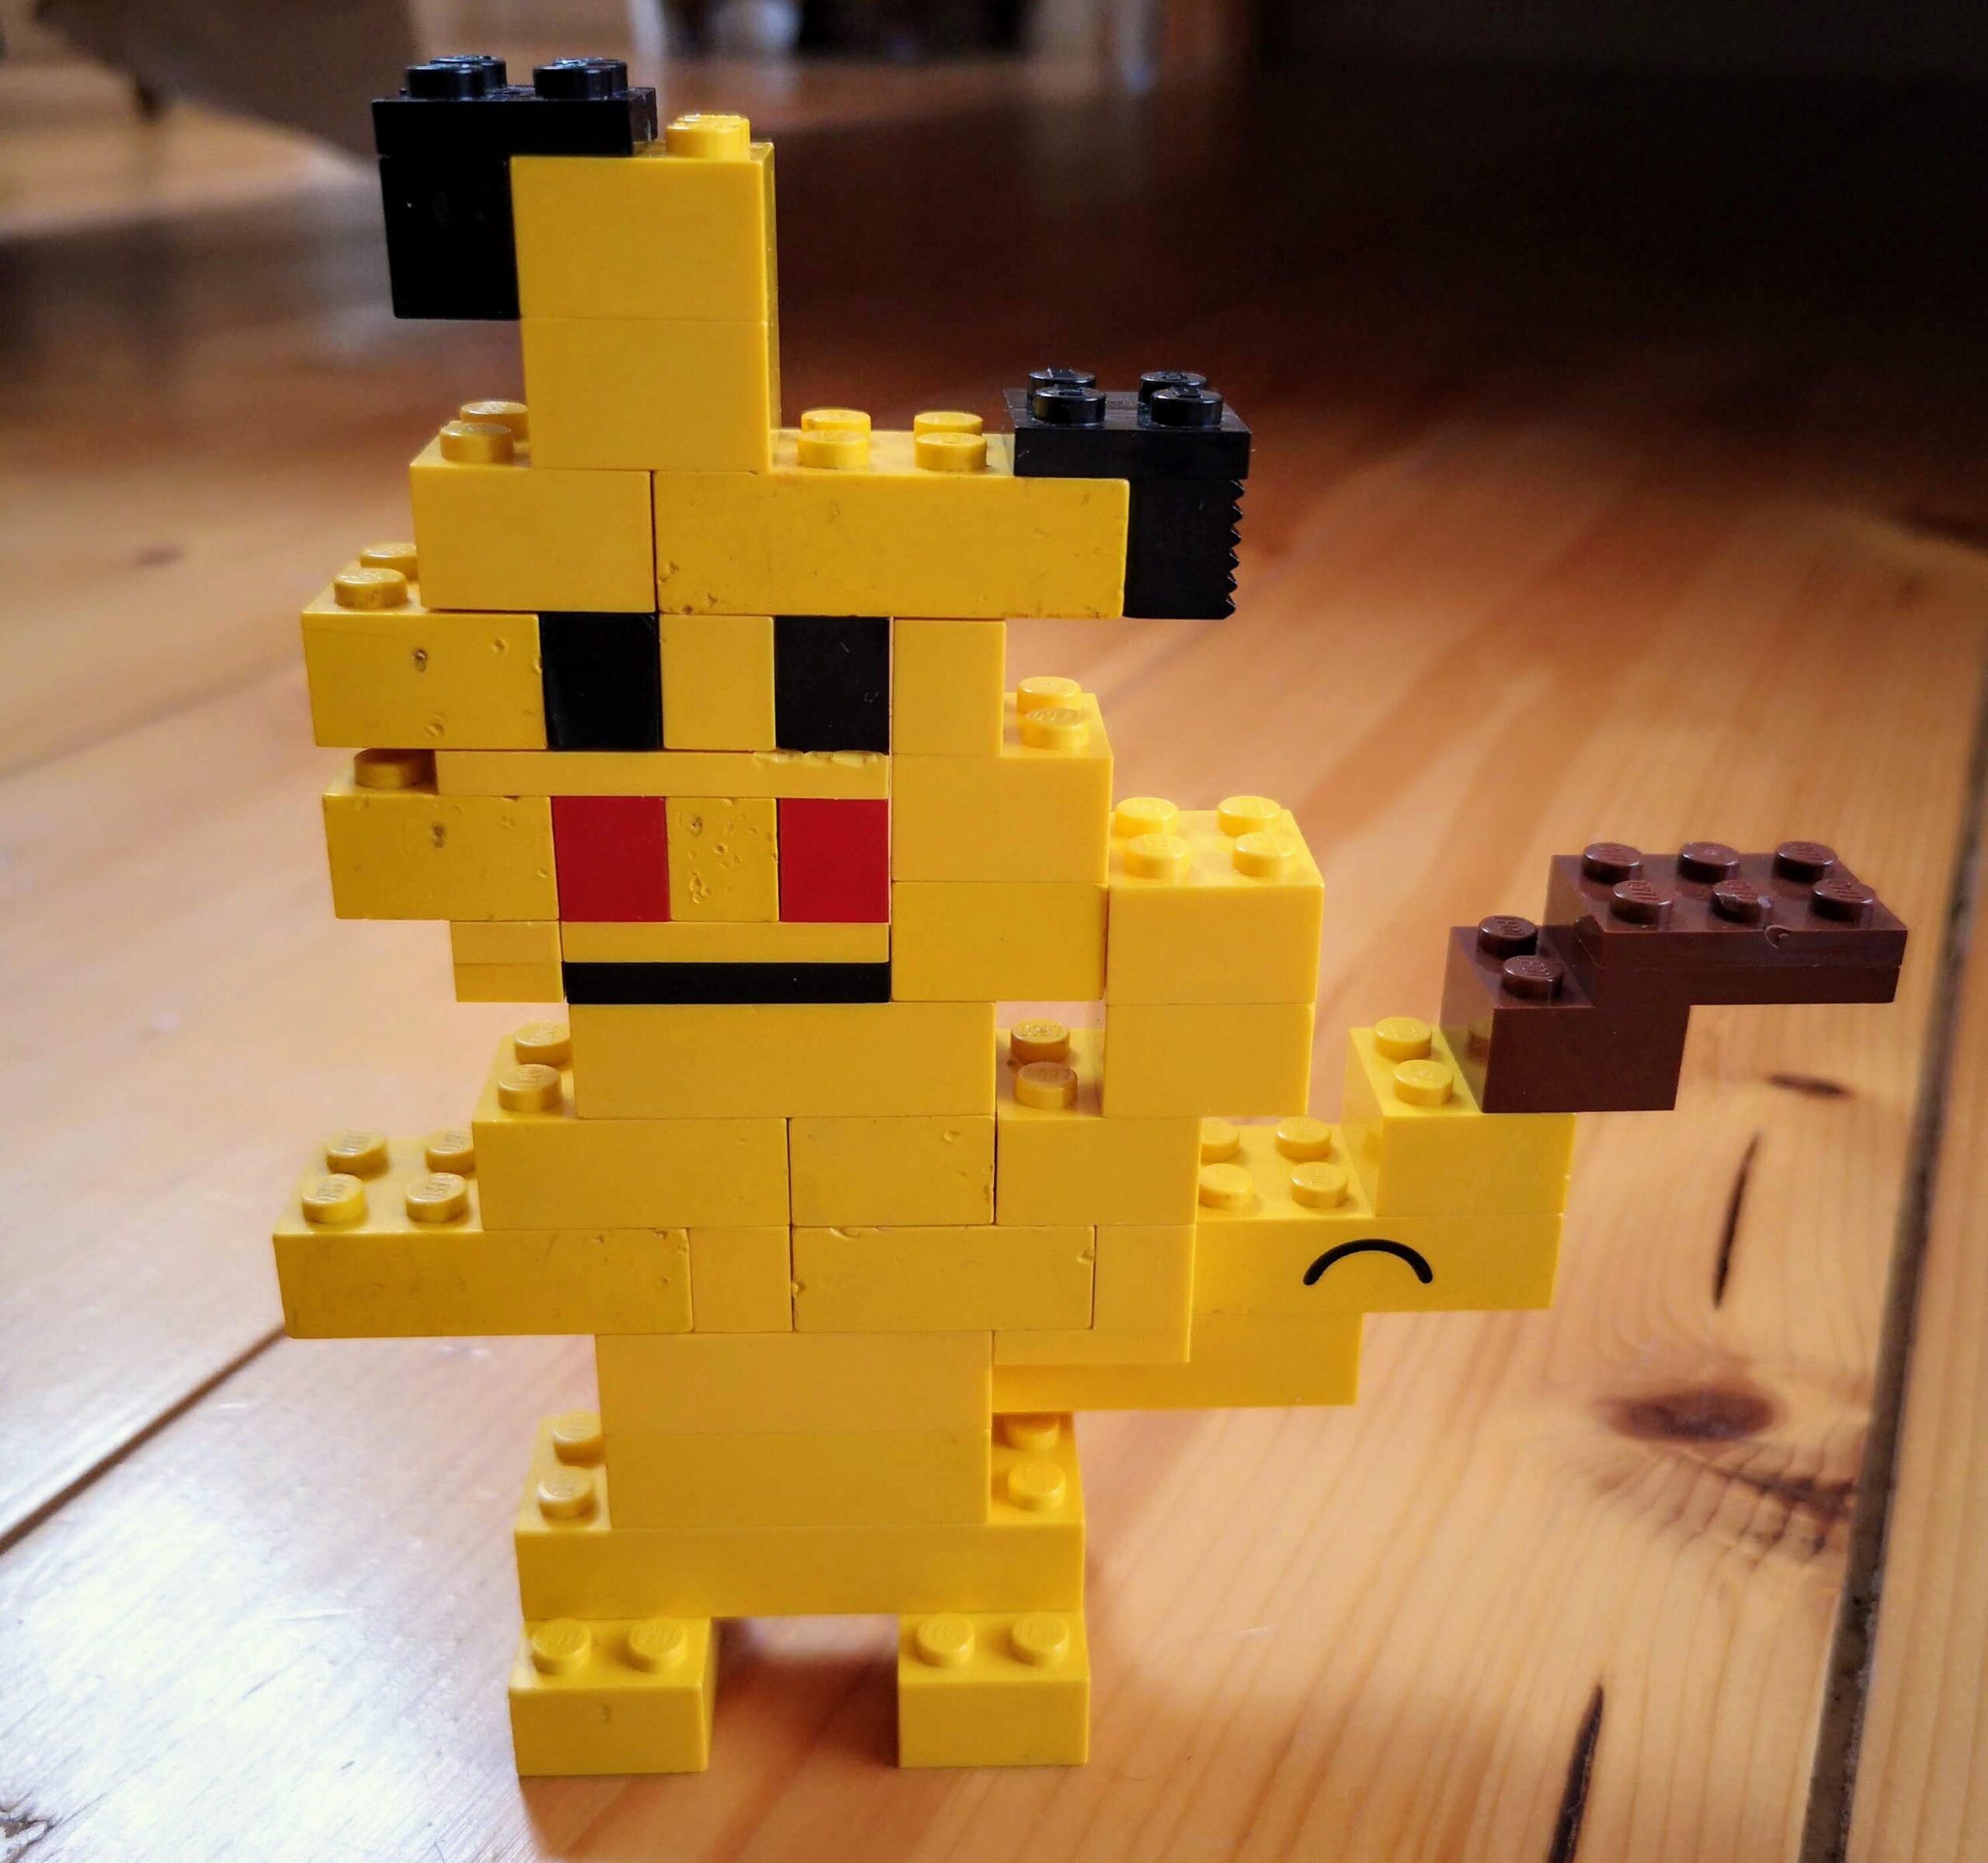 https://eamonncoyne.com/wp-content/uploads/2019/02/Lego-Pikachu-scaled.jpg